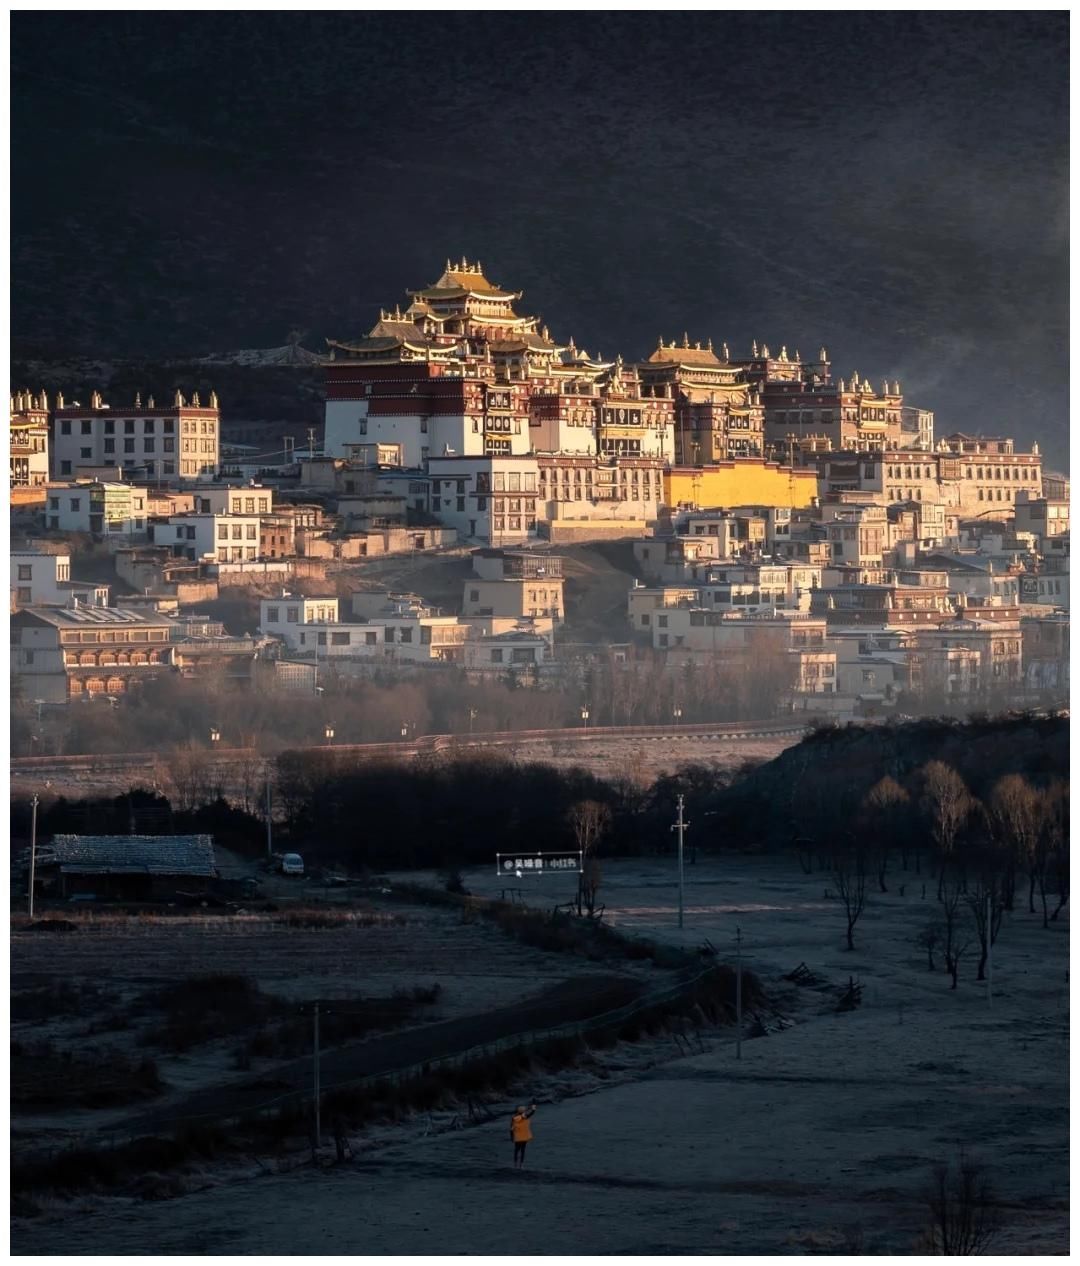 不如去香格里拉，草原风光十里如画，松赞林寺不输西藏